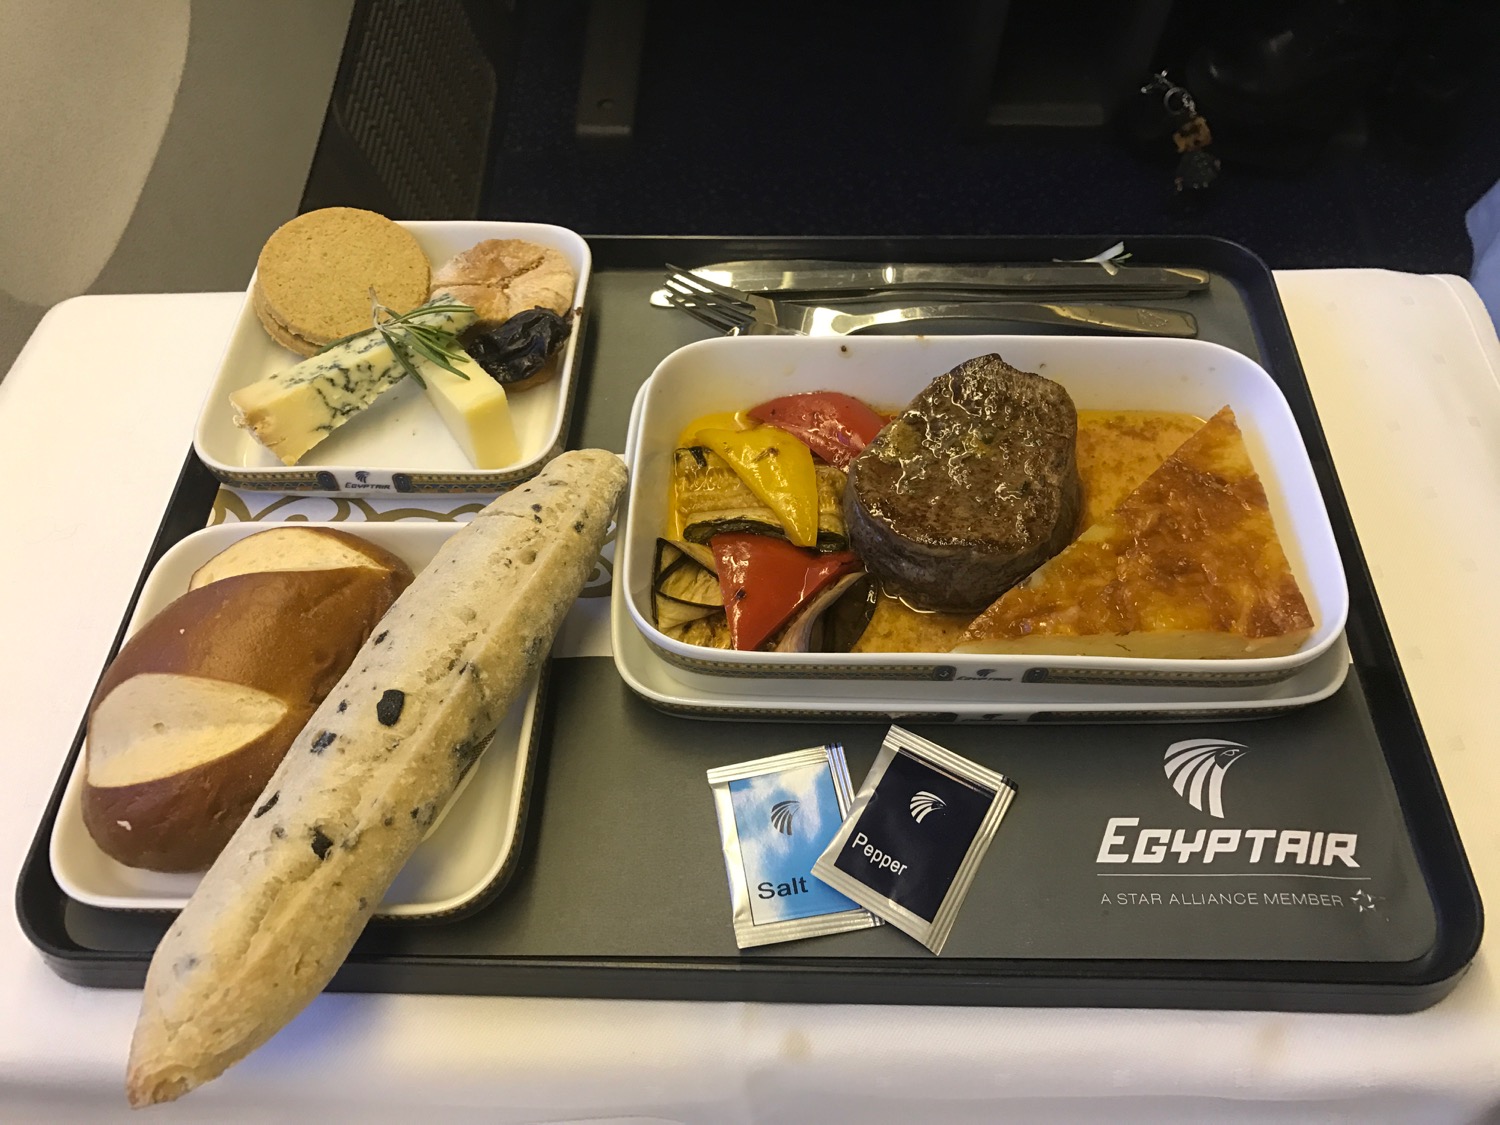 EgpytAir London to Cairo 777-300 Business Class - 61